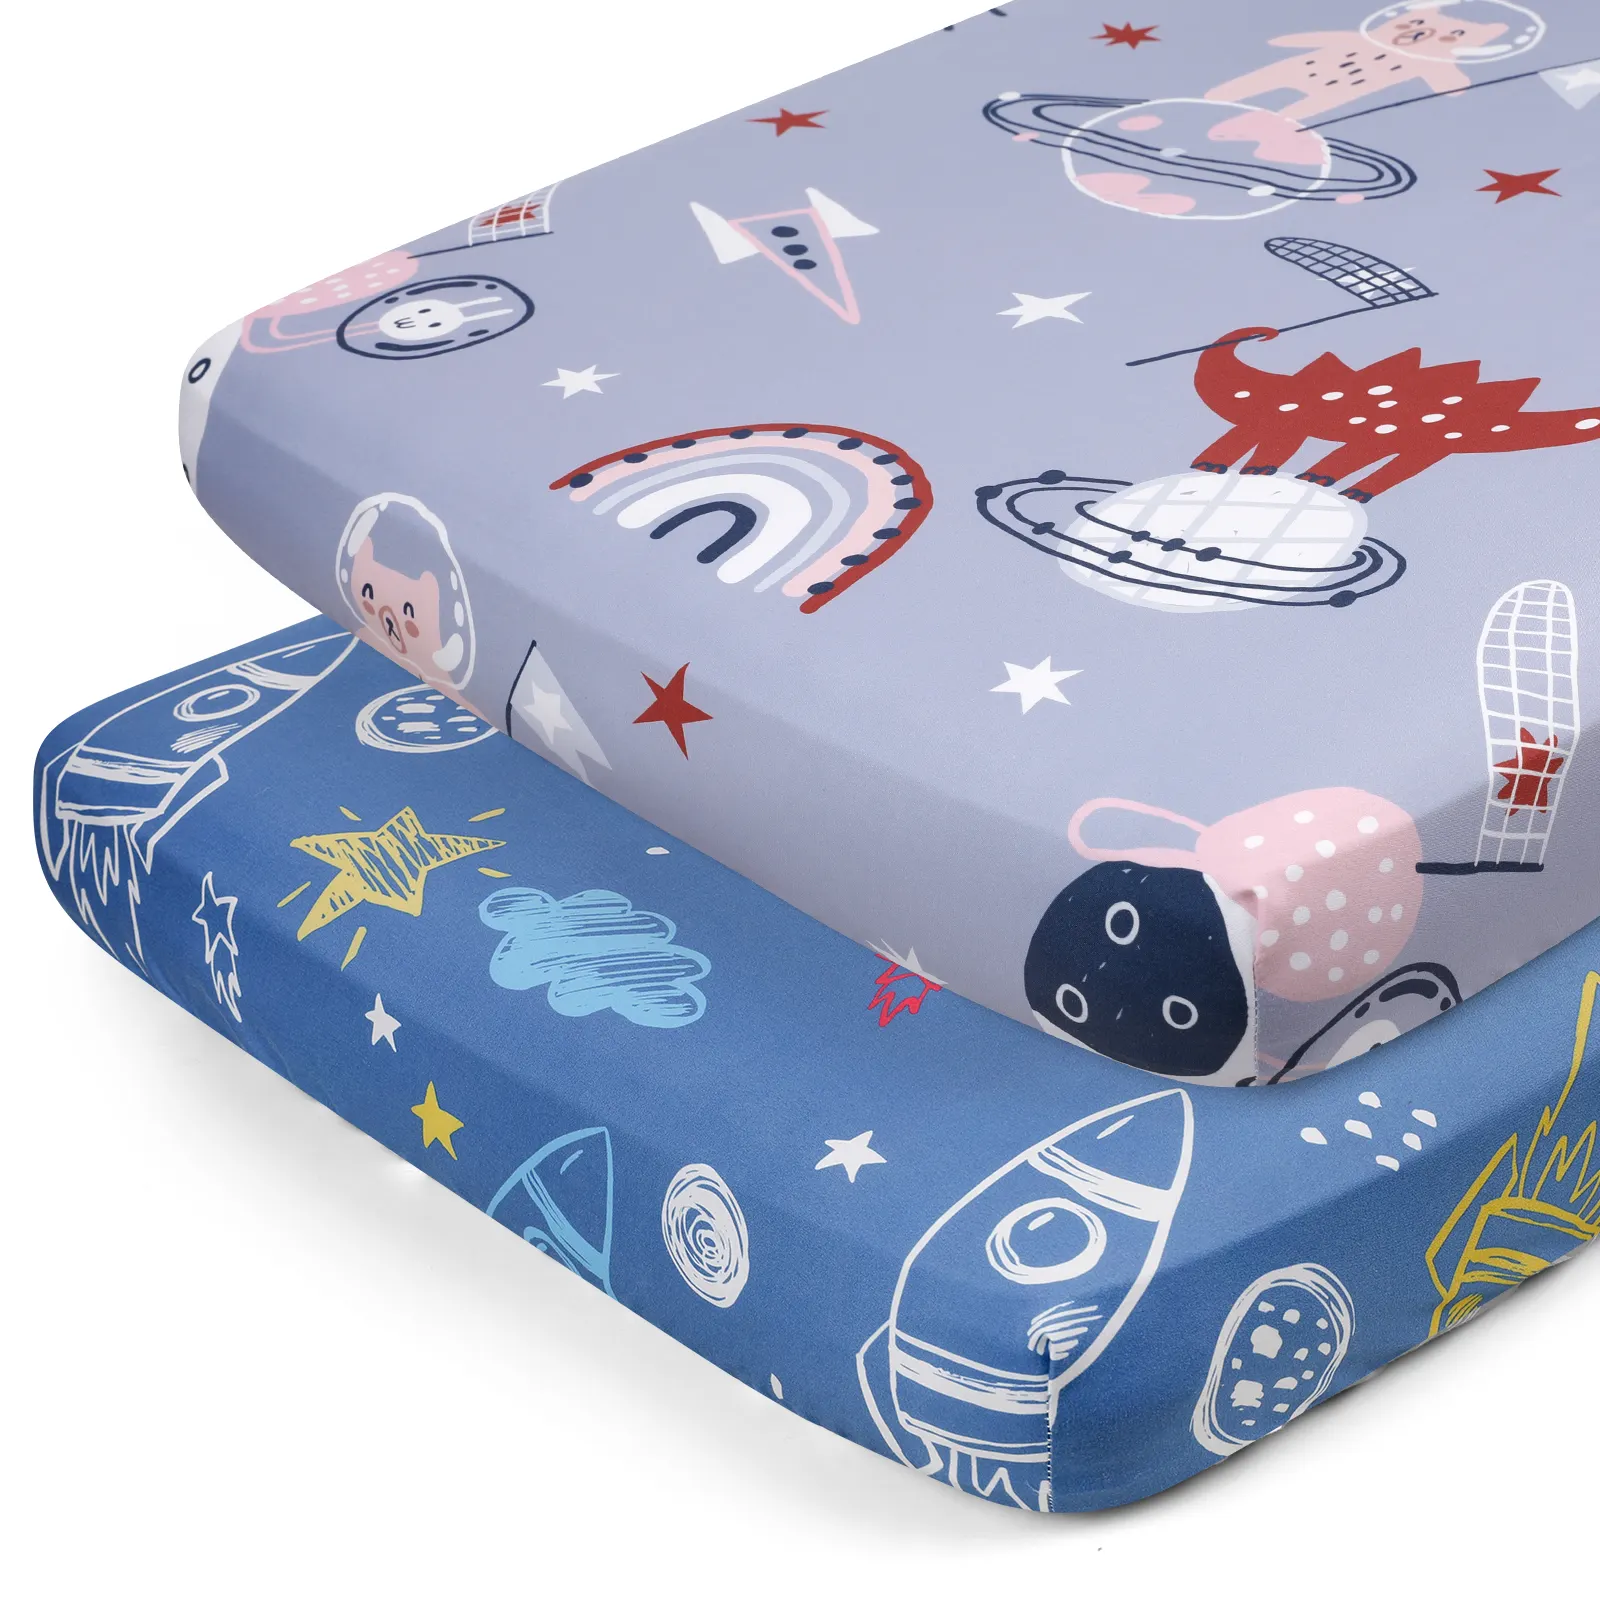 Stretchy mini crib sheets convertible payard mattress cover ultra soft material playard bedding